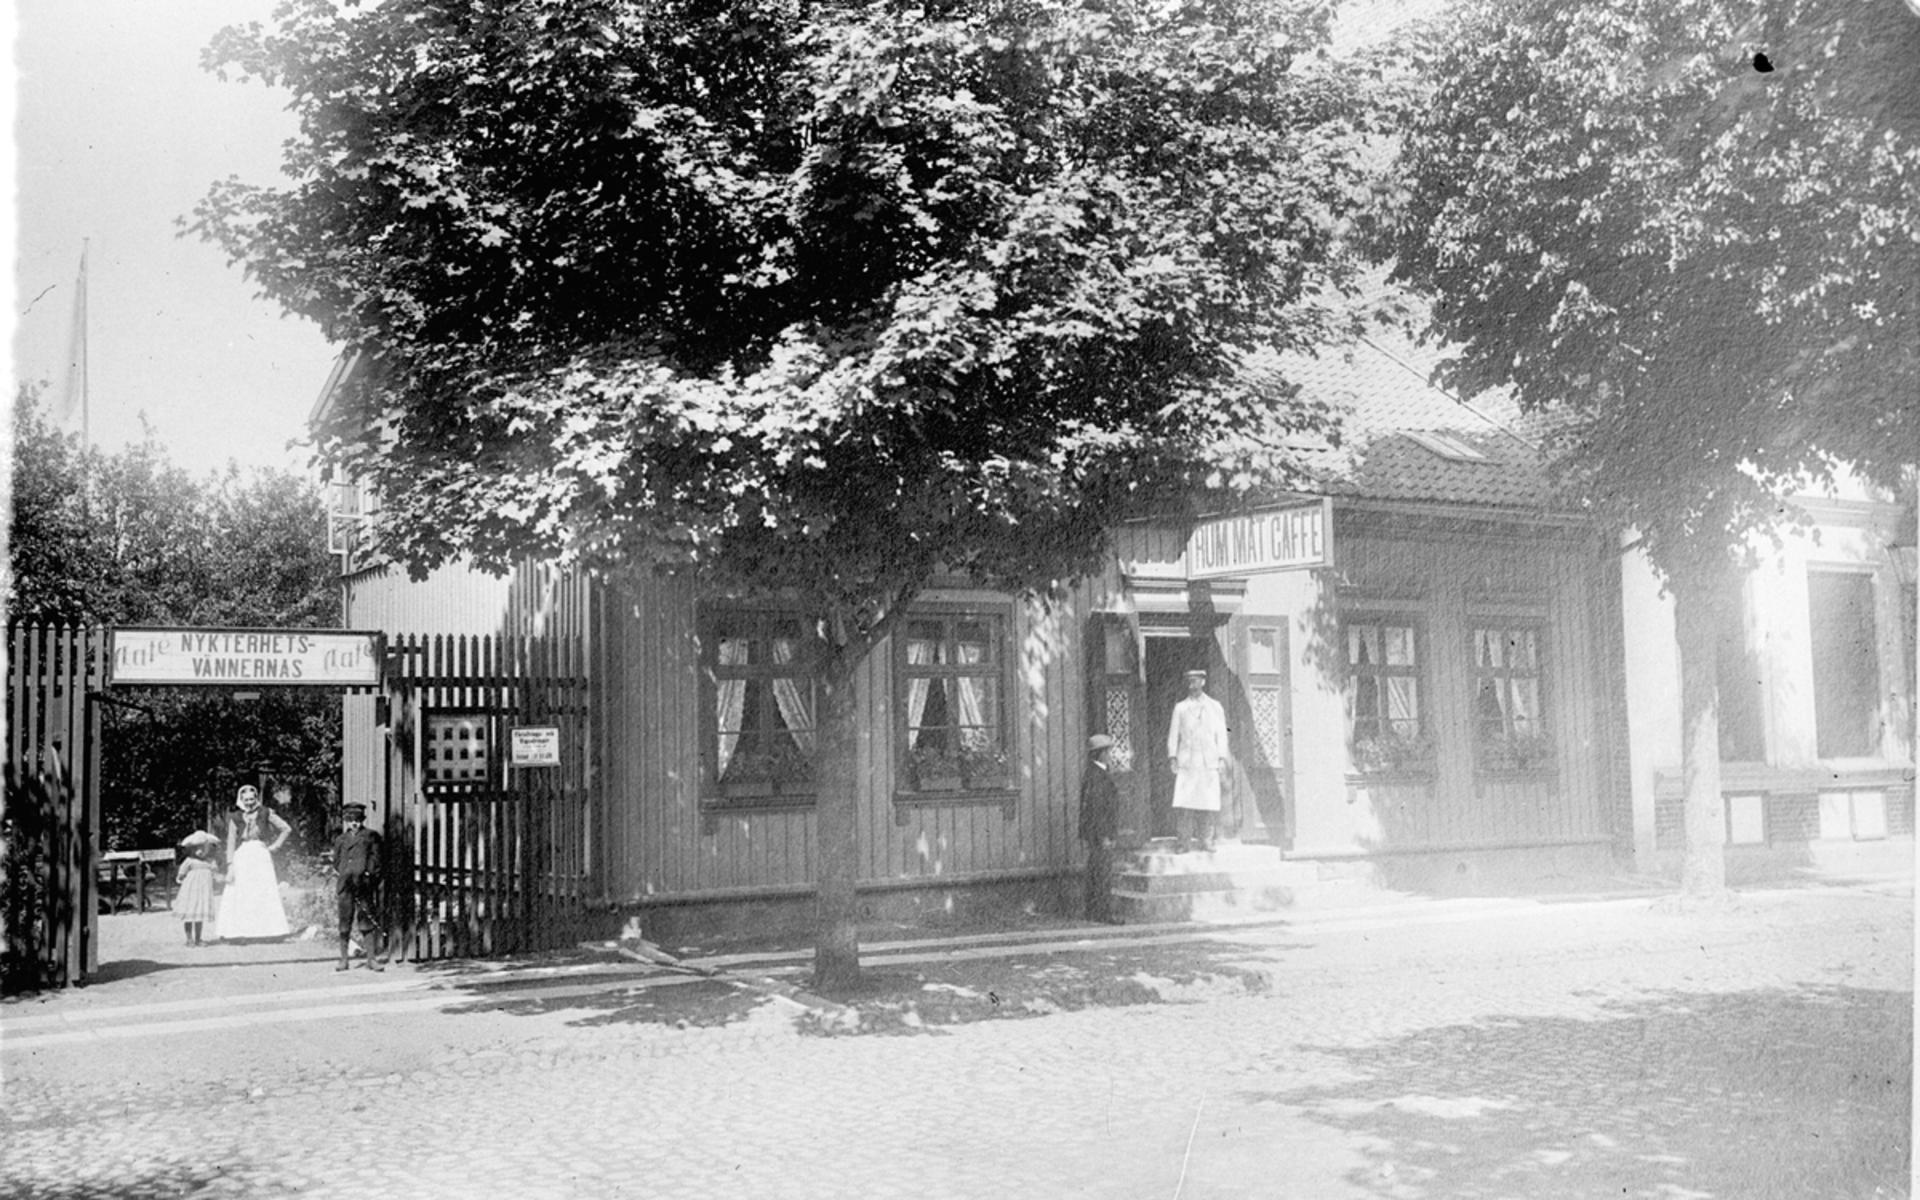 Amanda Nordfeldt utanför Nordfeldts konditori, Edsgatan 12 i Vänersborg. Bilden är från cirka 1900.